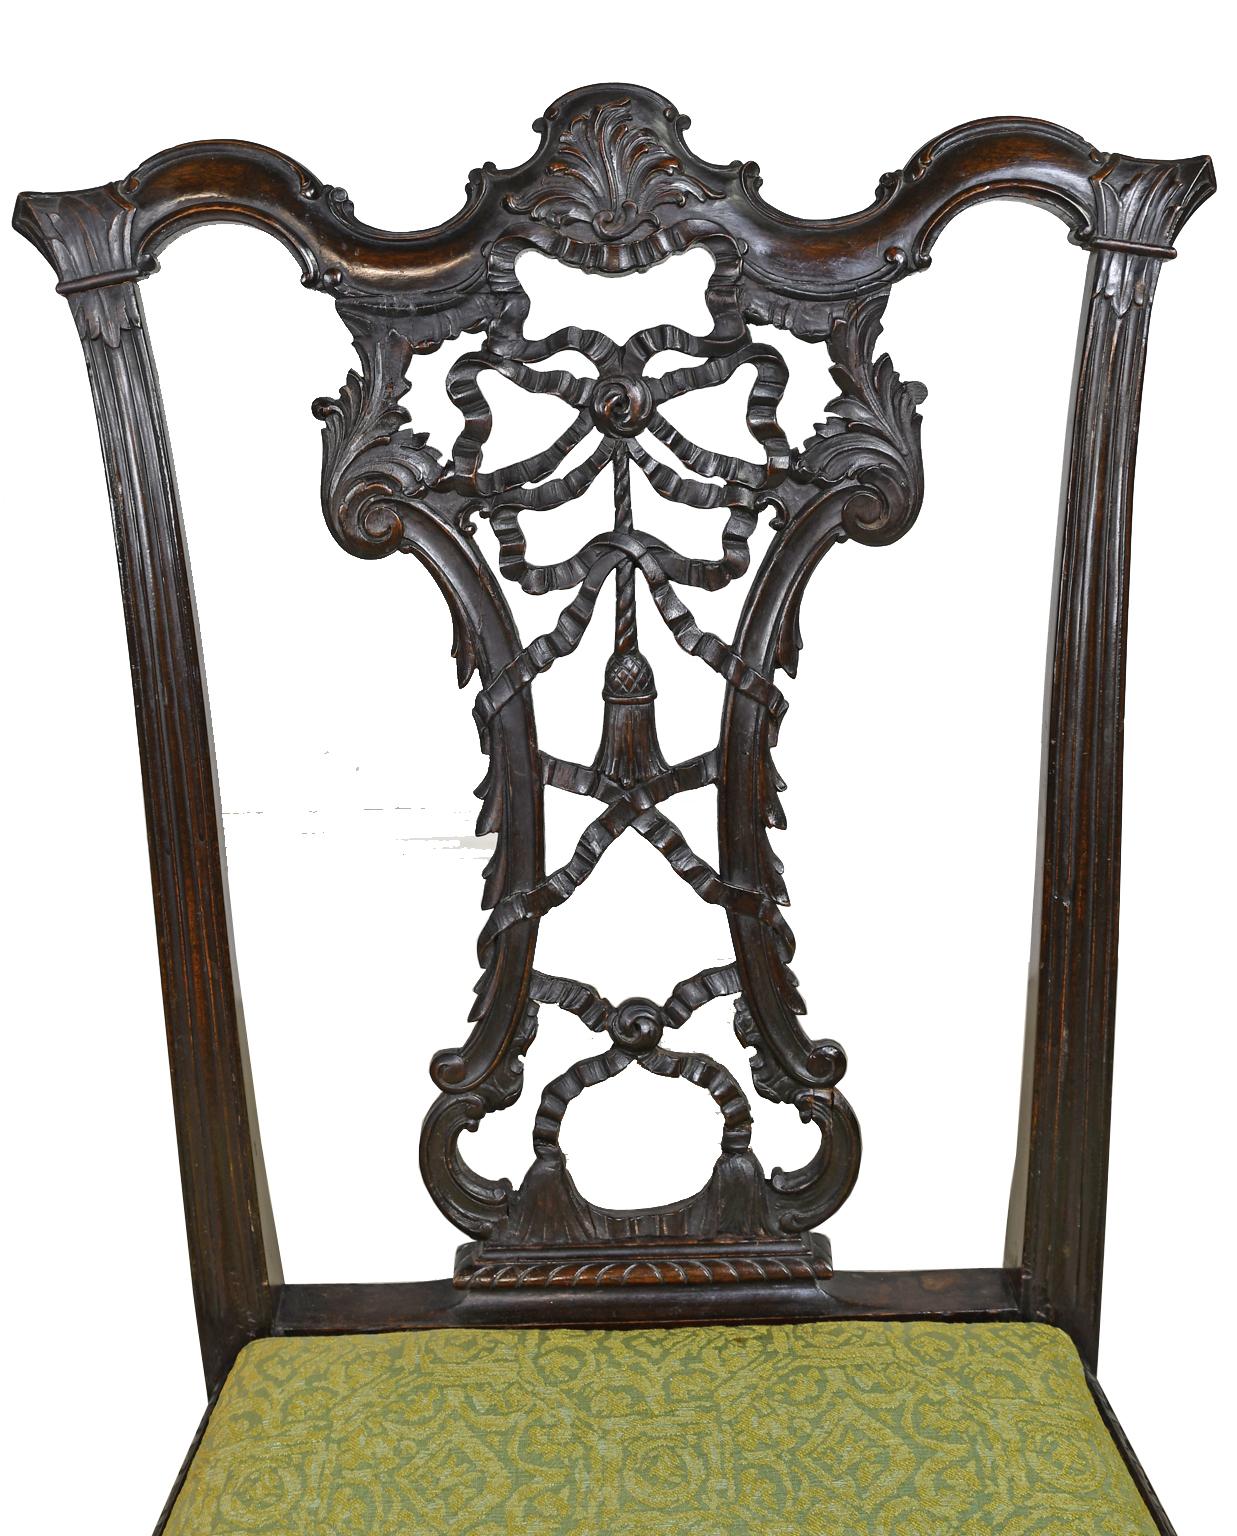 Très belle chaise de style rococo et chippendale en acajou, avec un dossier sculpté en ruban. Le dos en ruban est délicieusement sculpté et articulé, encadré par des feuilles d'acanthe sculptées. Les genoux de la chaise et les pieds griffus sont